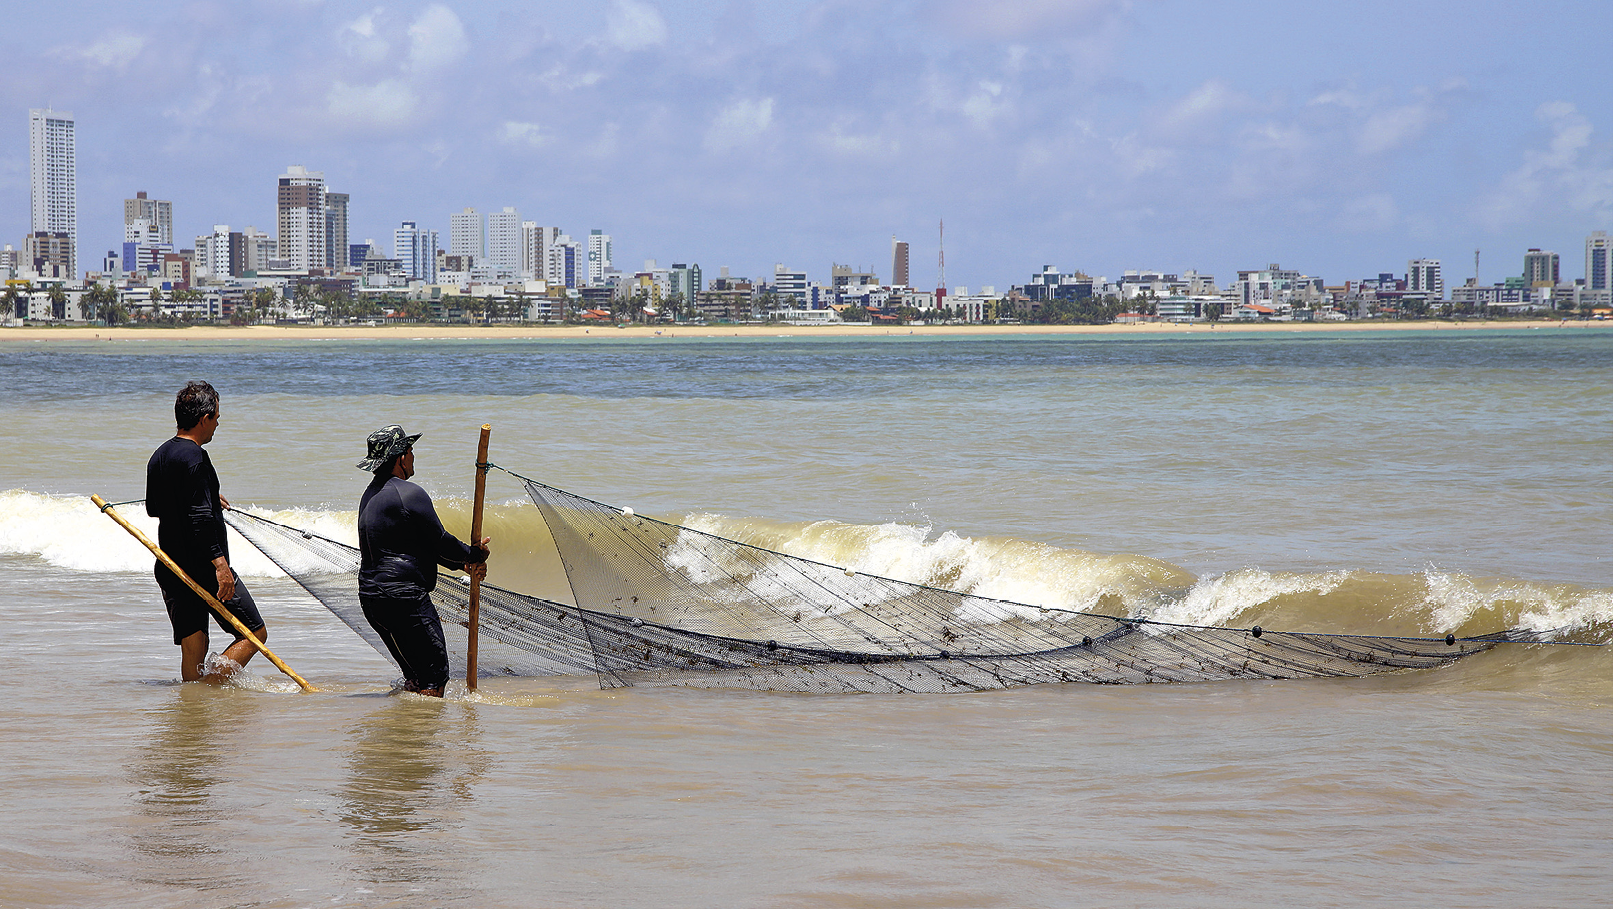 Fotografia. No primeiro plano, dois homens seguram uma rede extensa de pesca dentro do mar, com a água na altura do joelho. No segundo plano, faixa de areia e edifícios e casas na orla da praia.